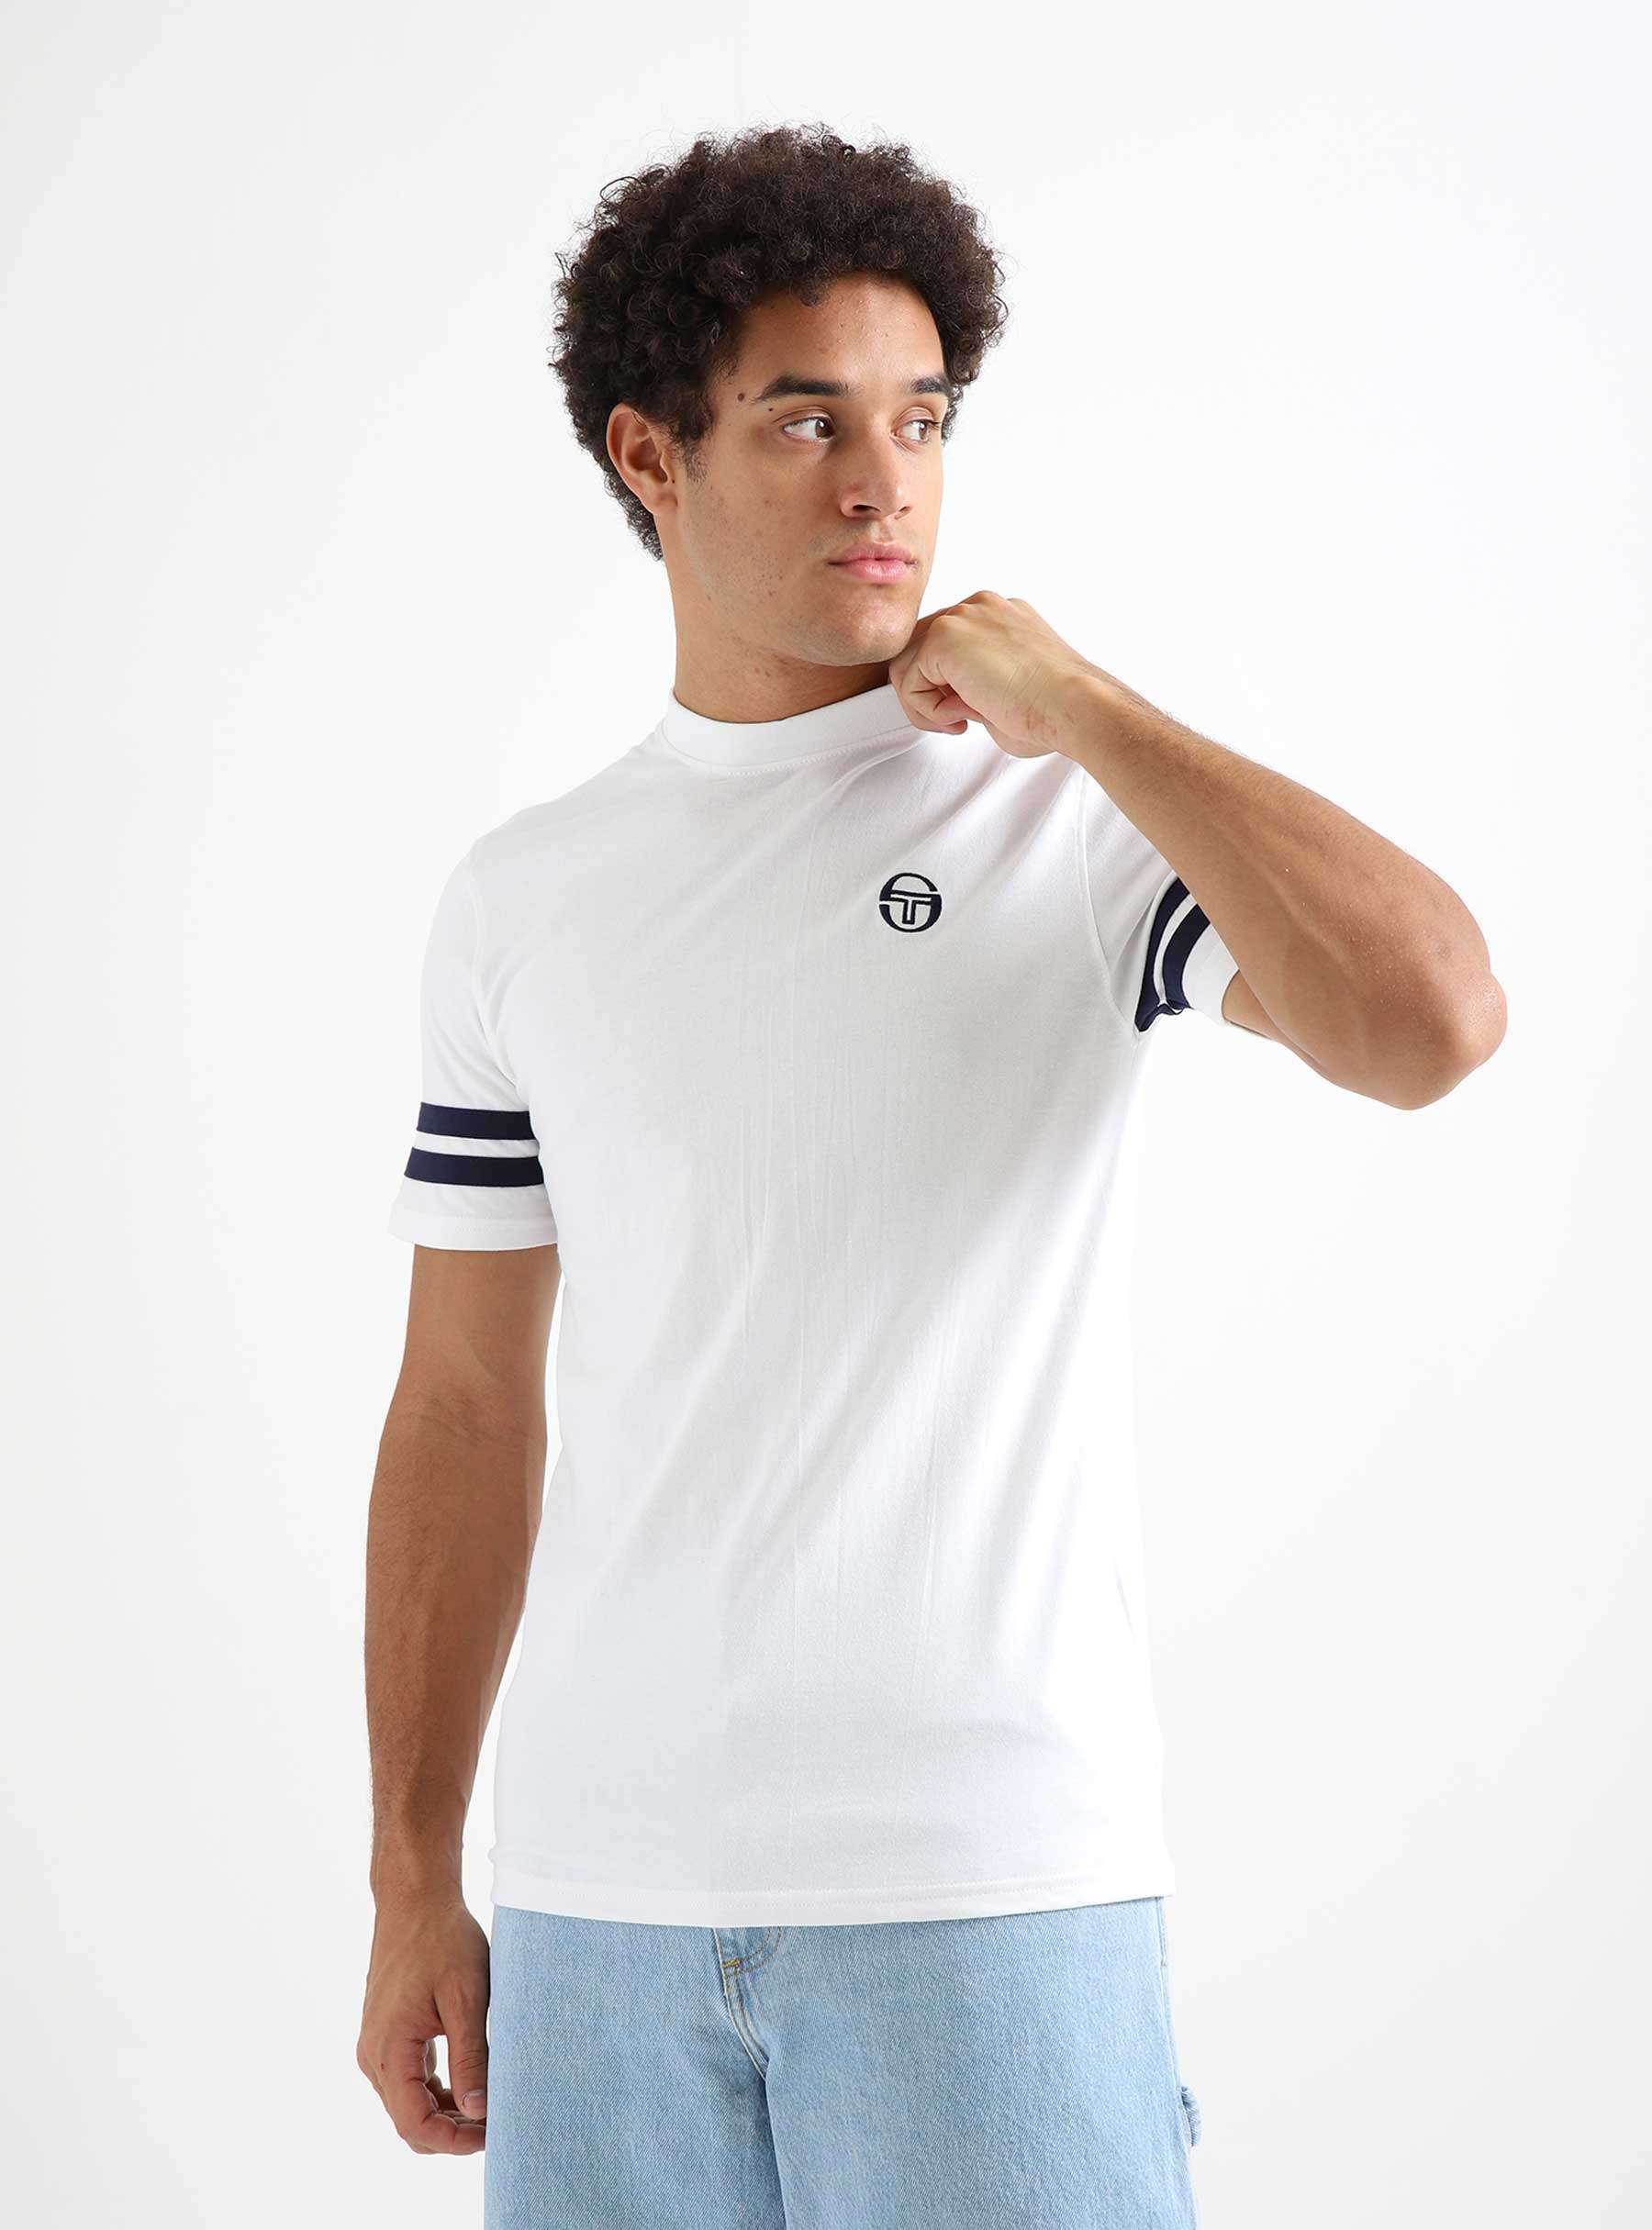 Grello T-shirt White 18376-000